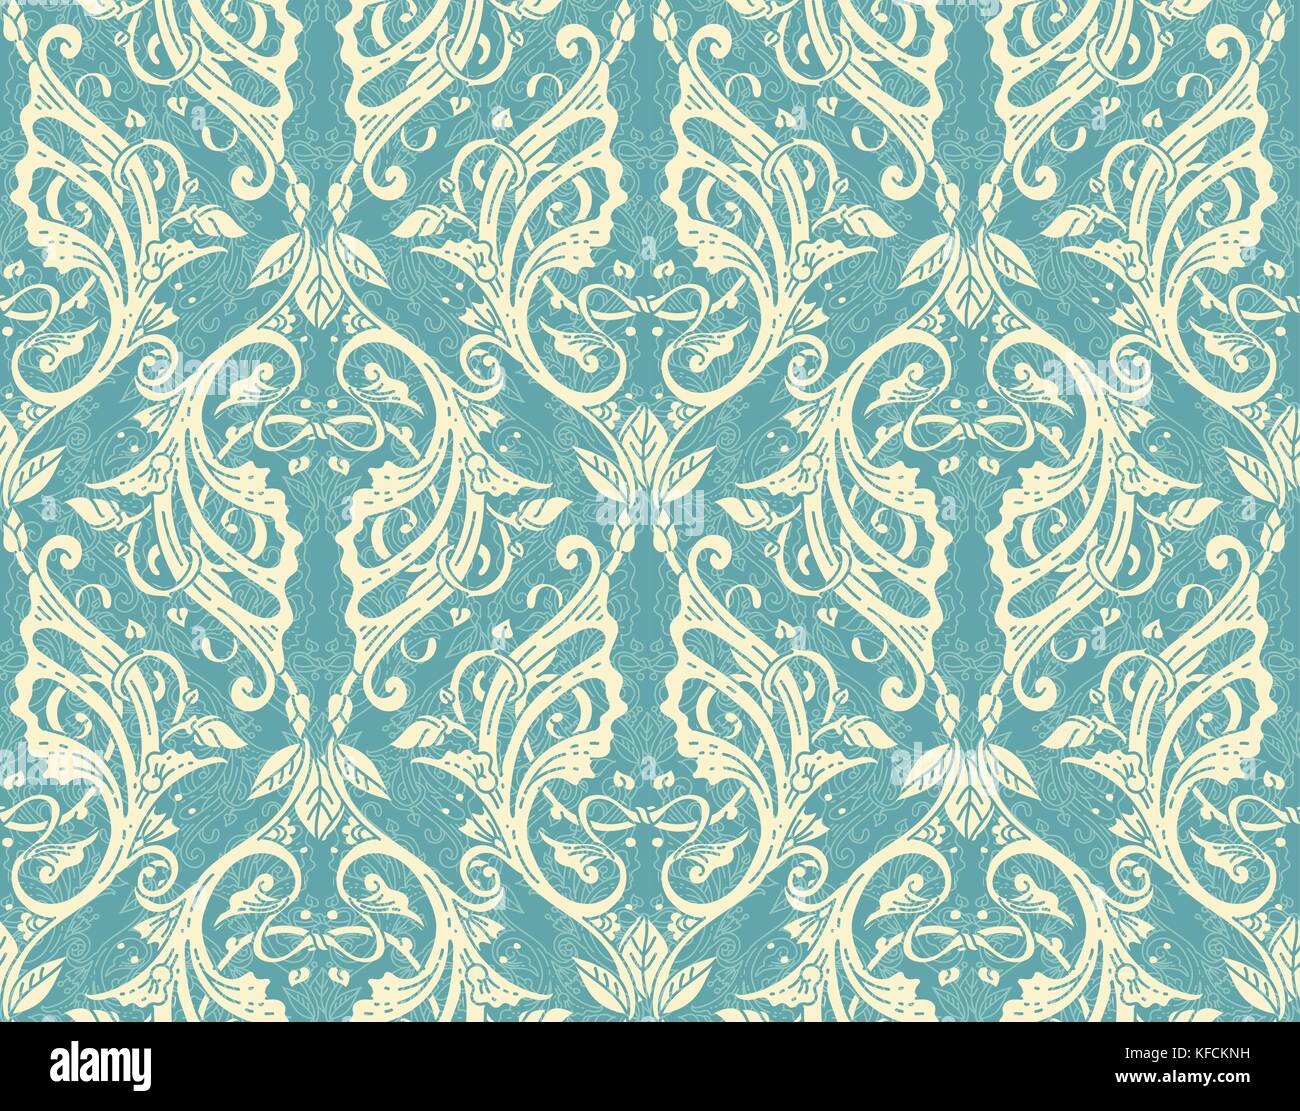 Florale nahtlose Muster - vector Abbildung: Detaillierte Ornament von floralen Zweige und Äste, in blauen Farben Stock Vektor